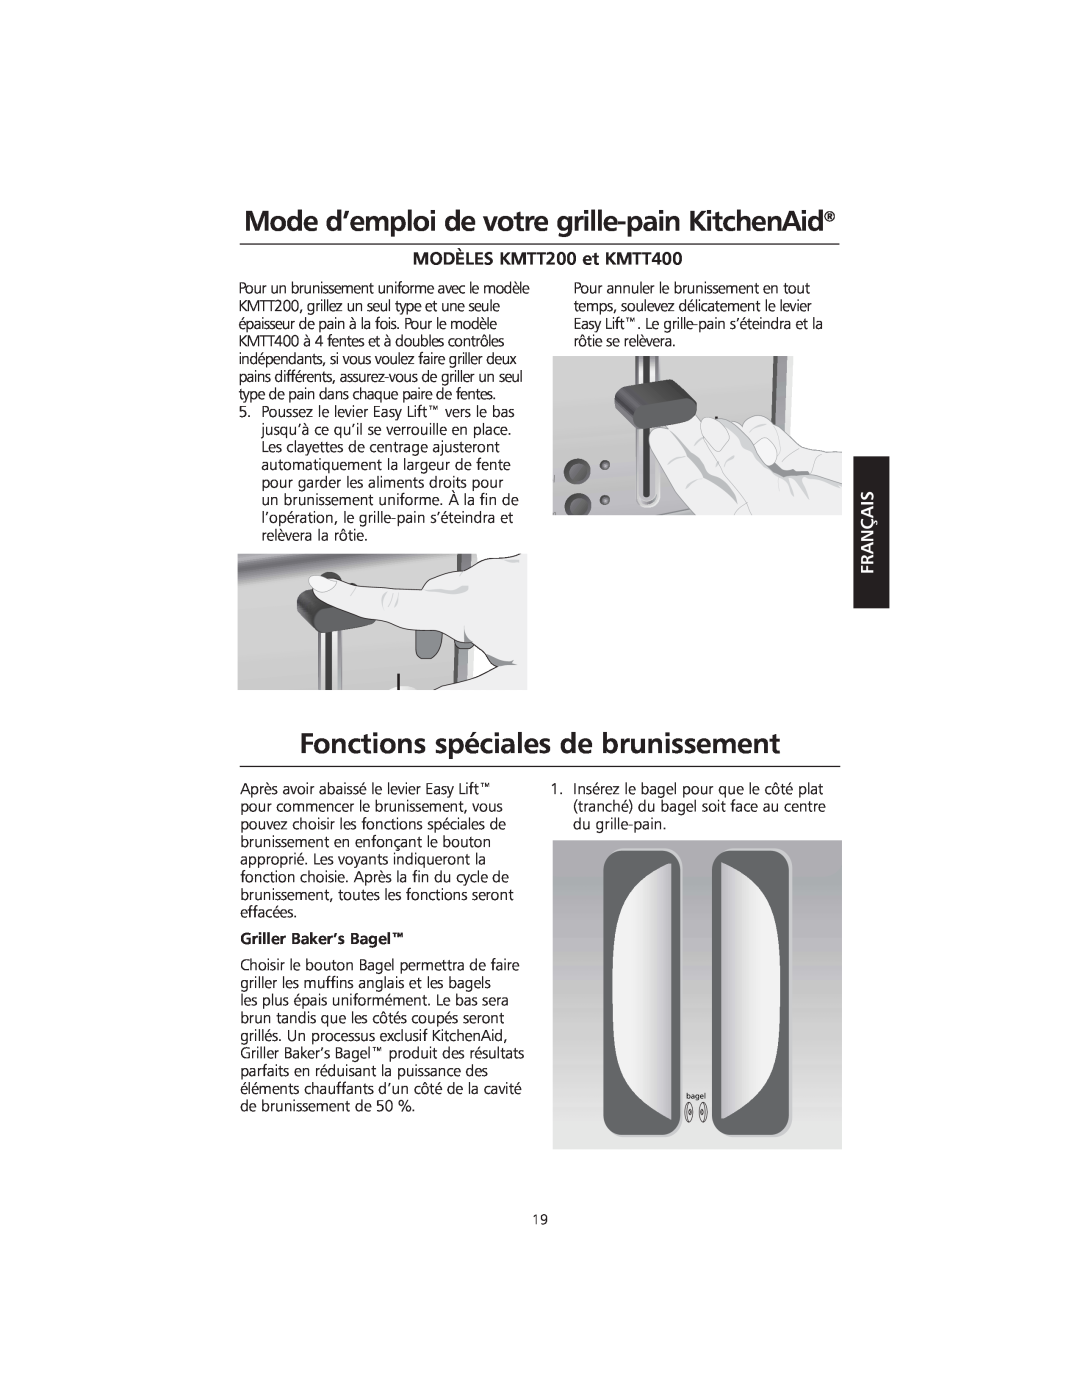 KitchenAid KMTT200 manual Fonctions spéciales de brunissement, Mode d’emploi de votre grille-pain KitchenAid, Français 